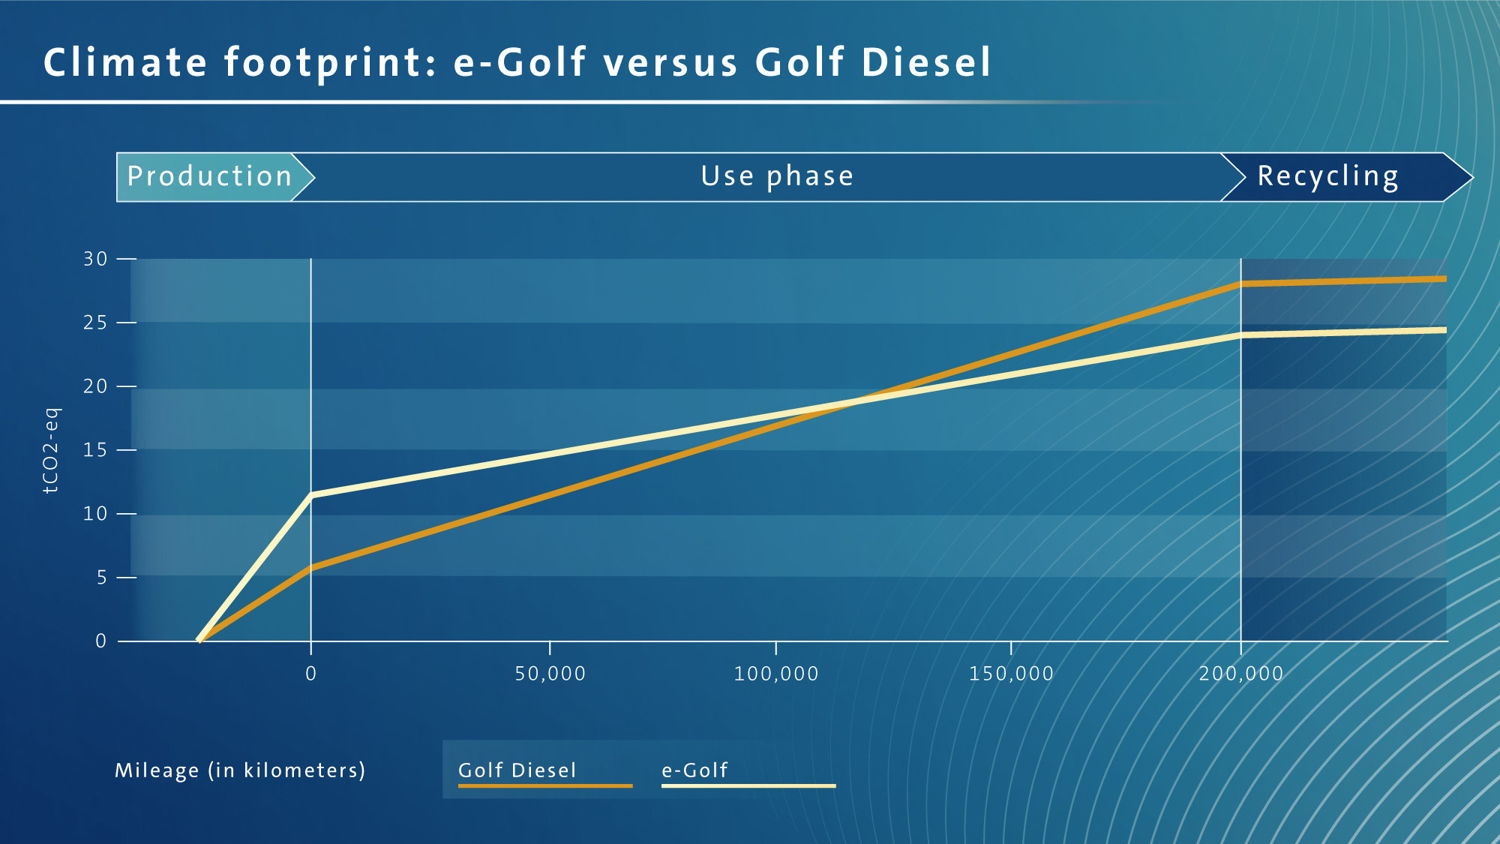 Comparación de la huella de carbono del e-Golf y Golf diesel: El e-Golf tiene un mejor equilibrio de CO2 después de aproximadamente 125,000 kilómetros